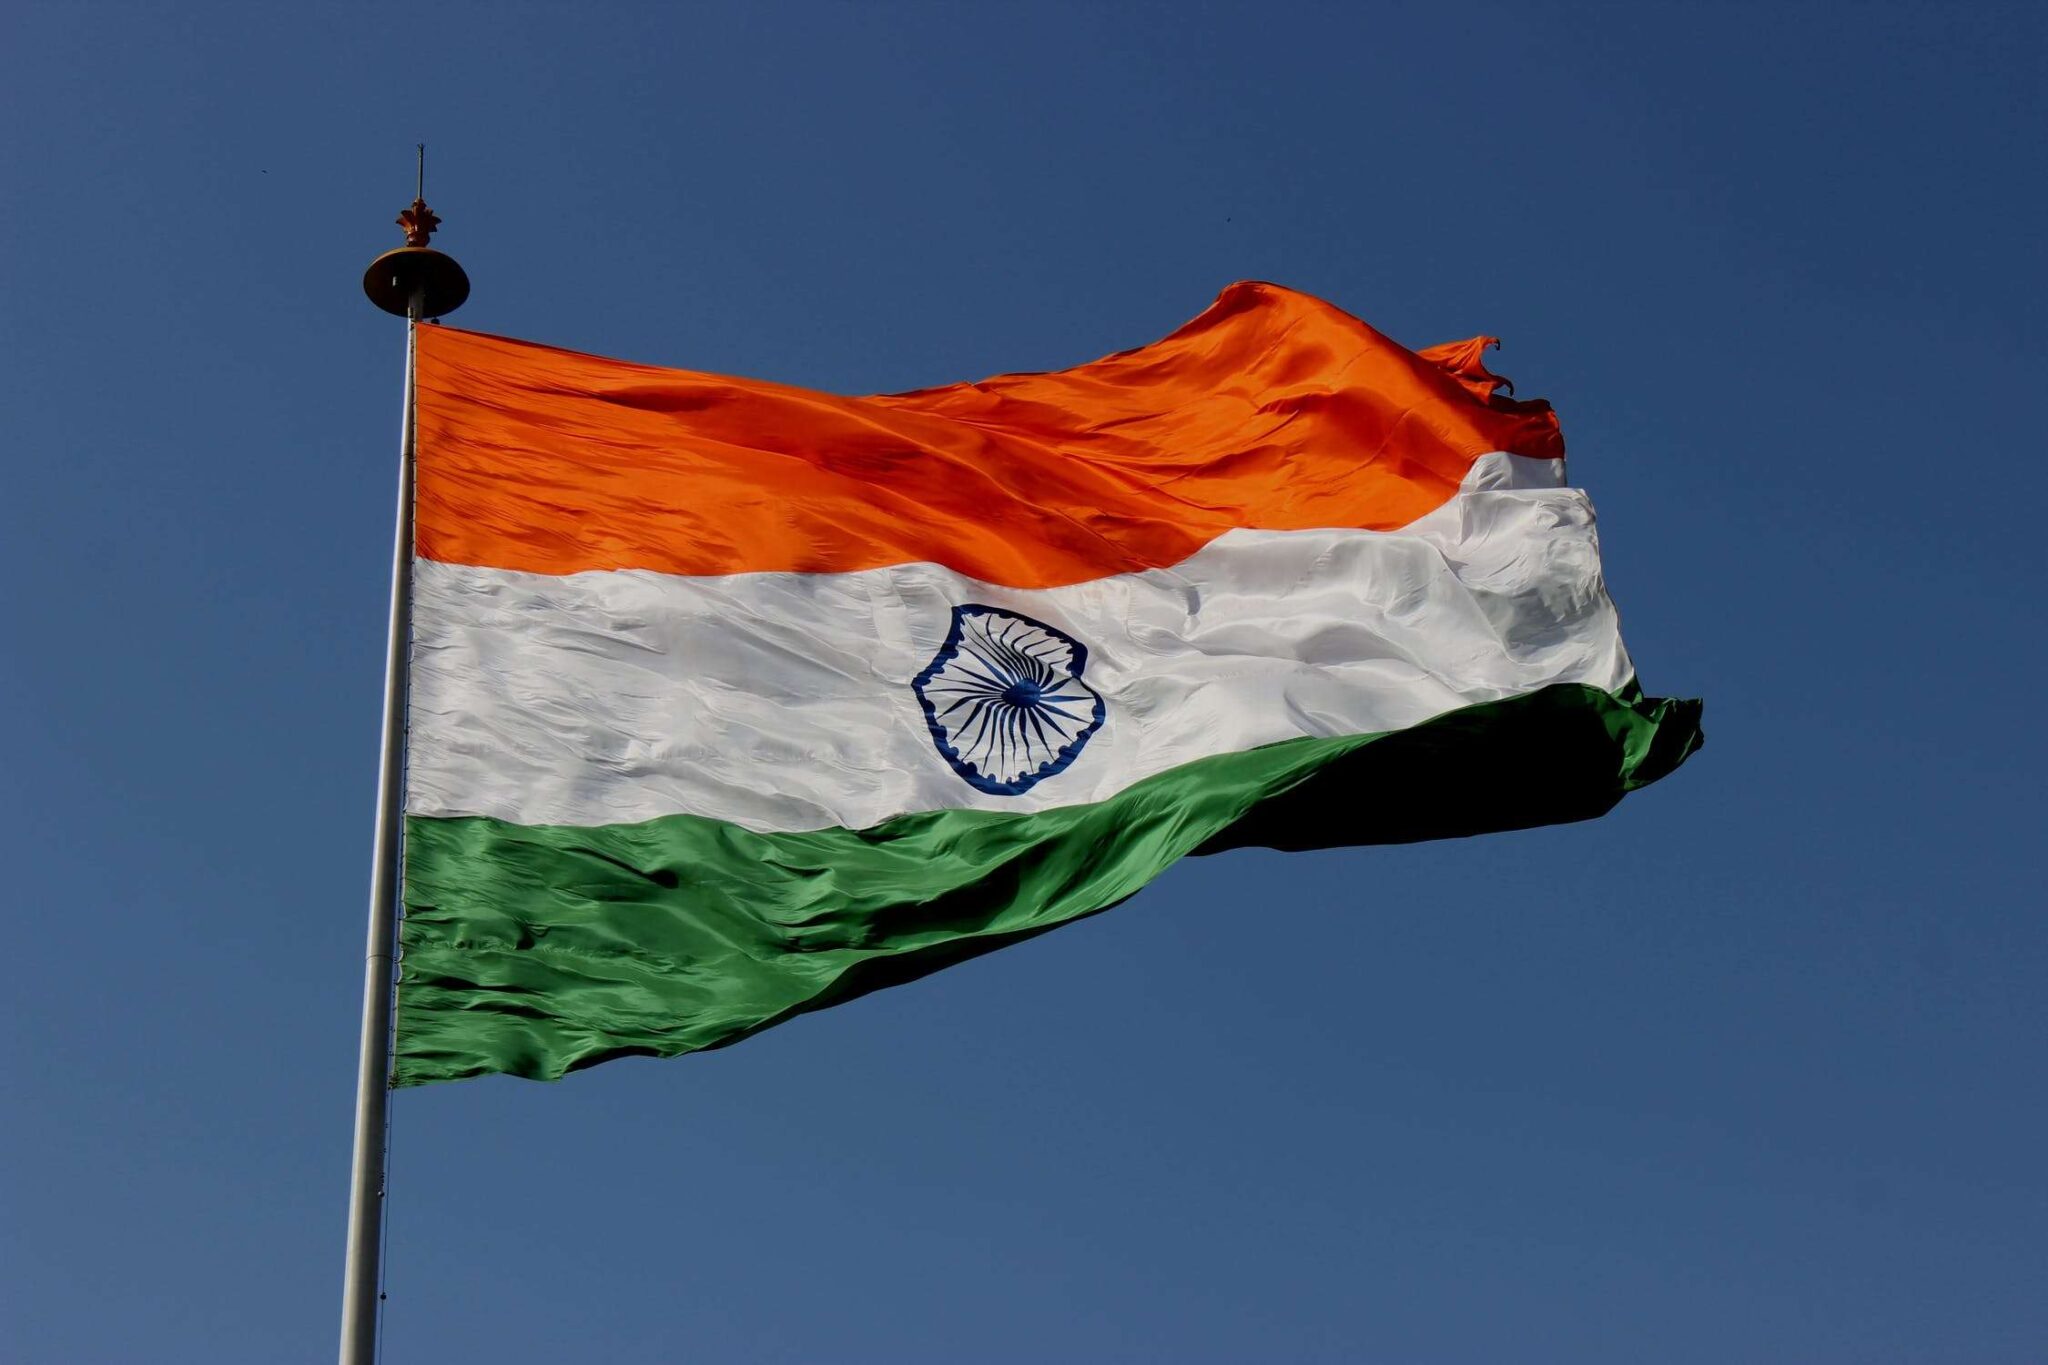 Hindistan Ermenistan'a askeri ataşe atayacak